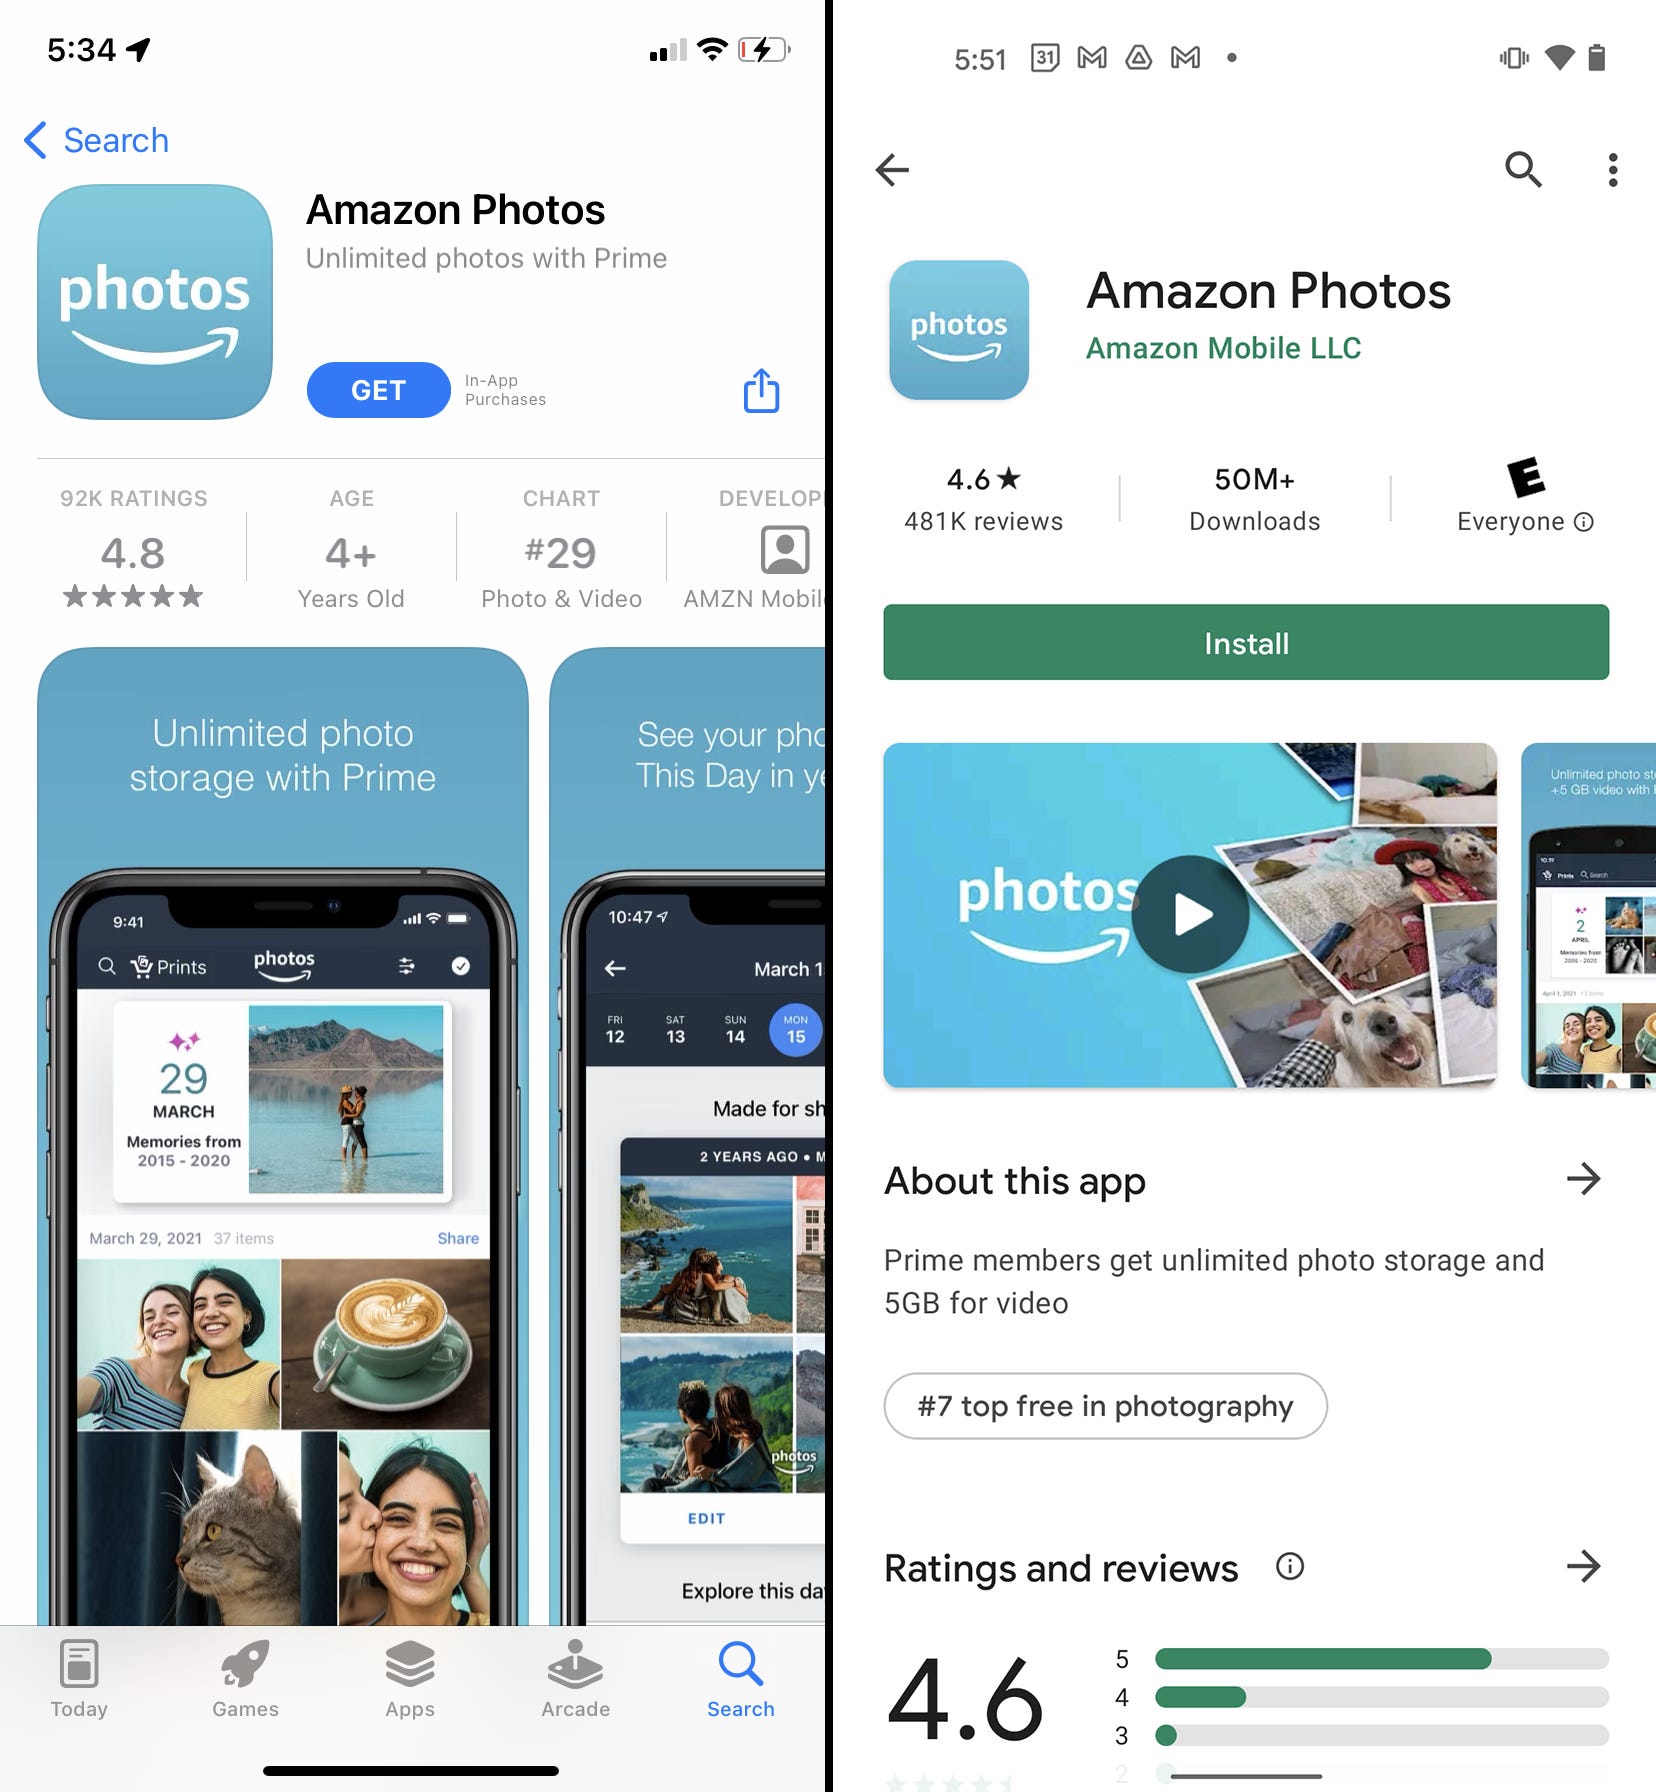 Le pagine dell'App Store e del Google Play Store per l'app Amazon Foto.